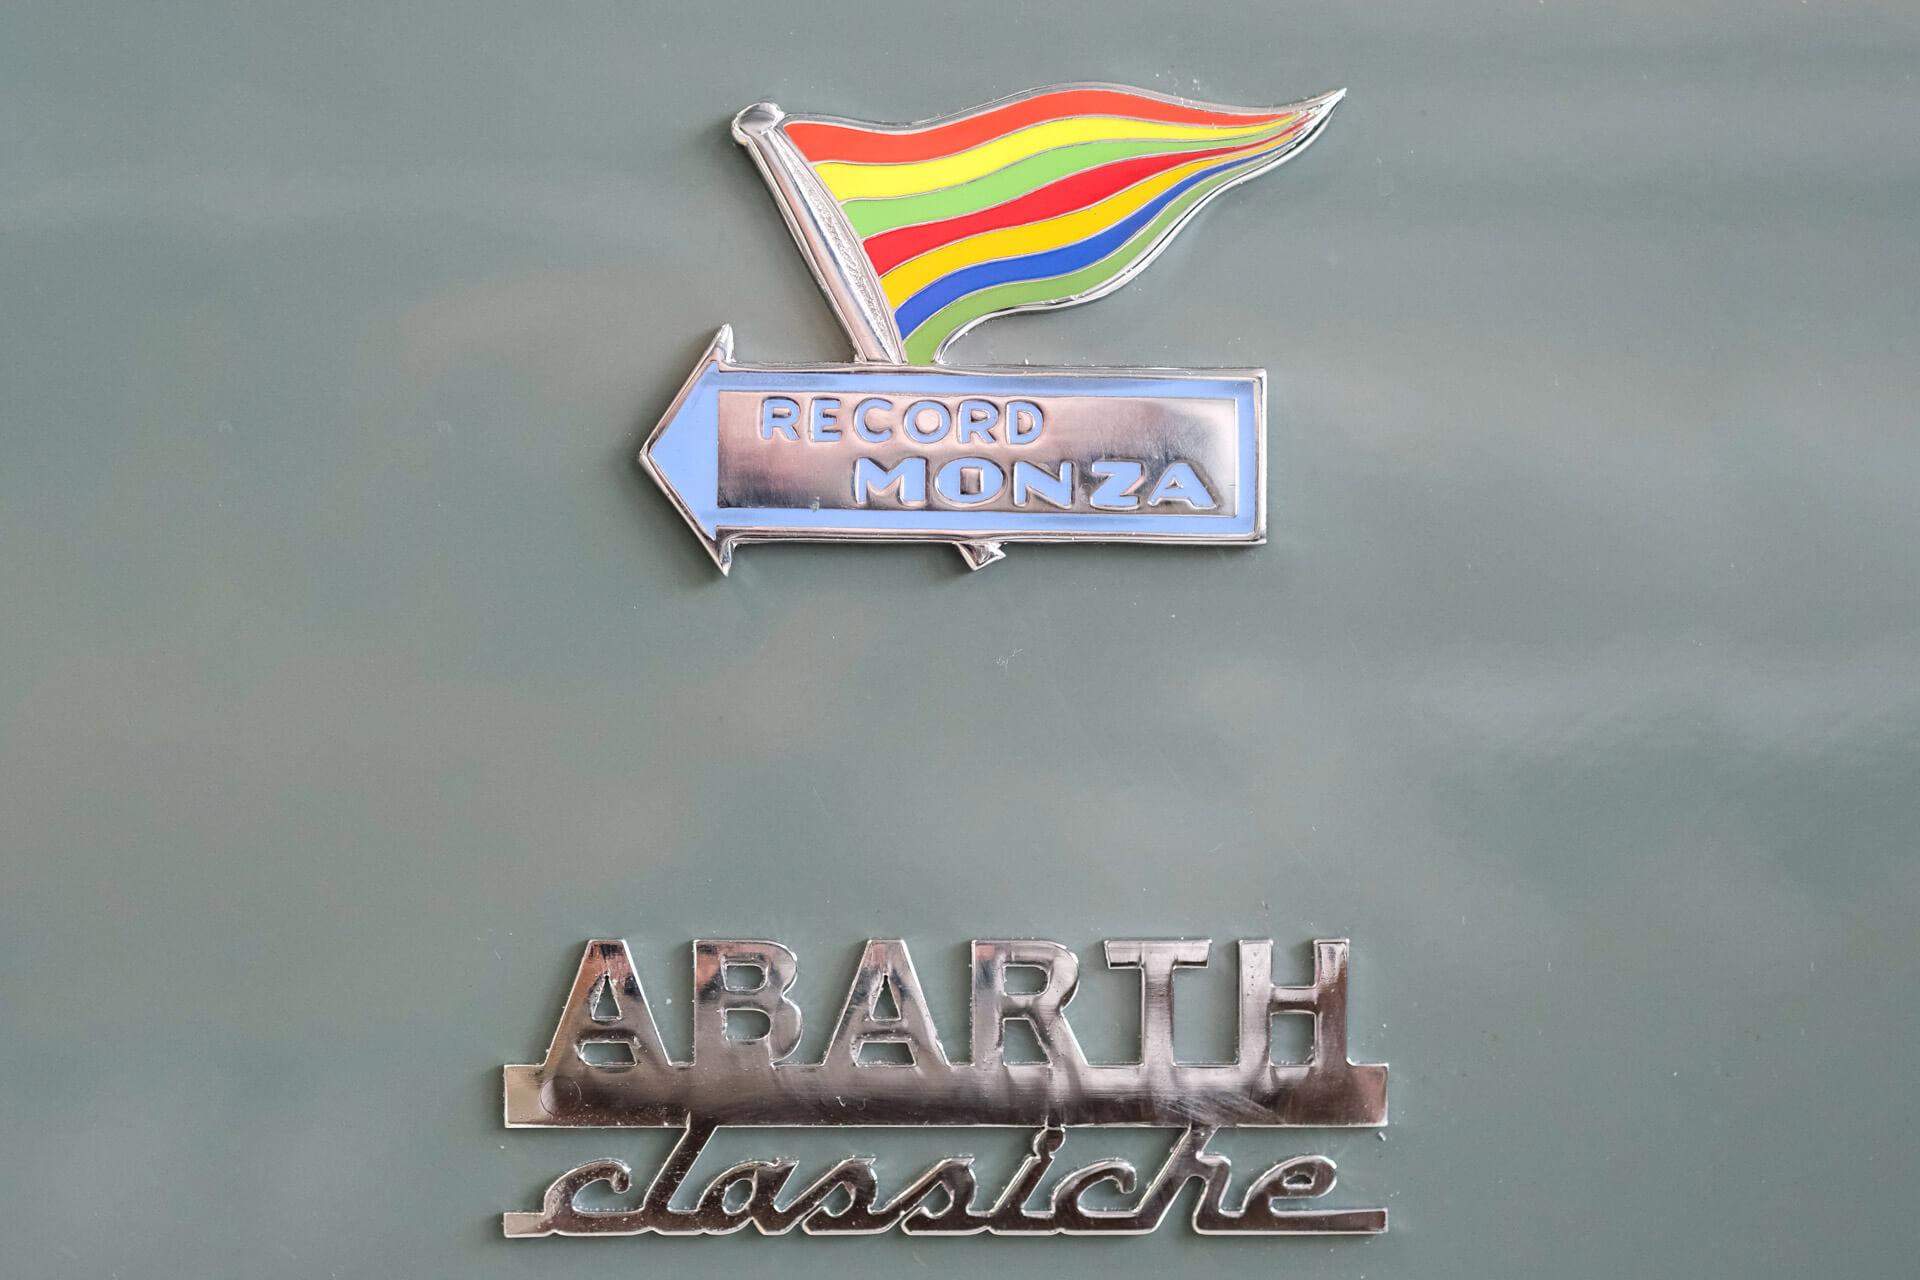 emblemas Record Monza e Abarth Classiche